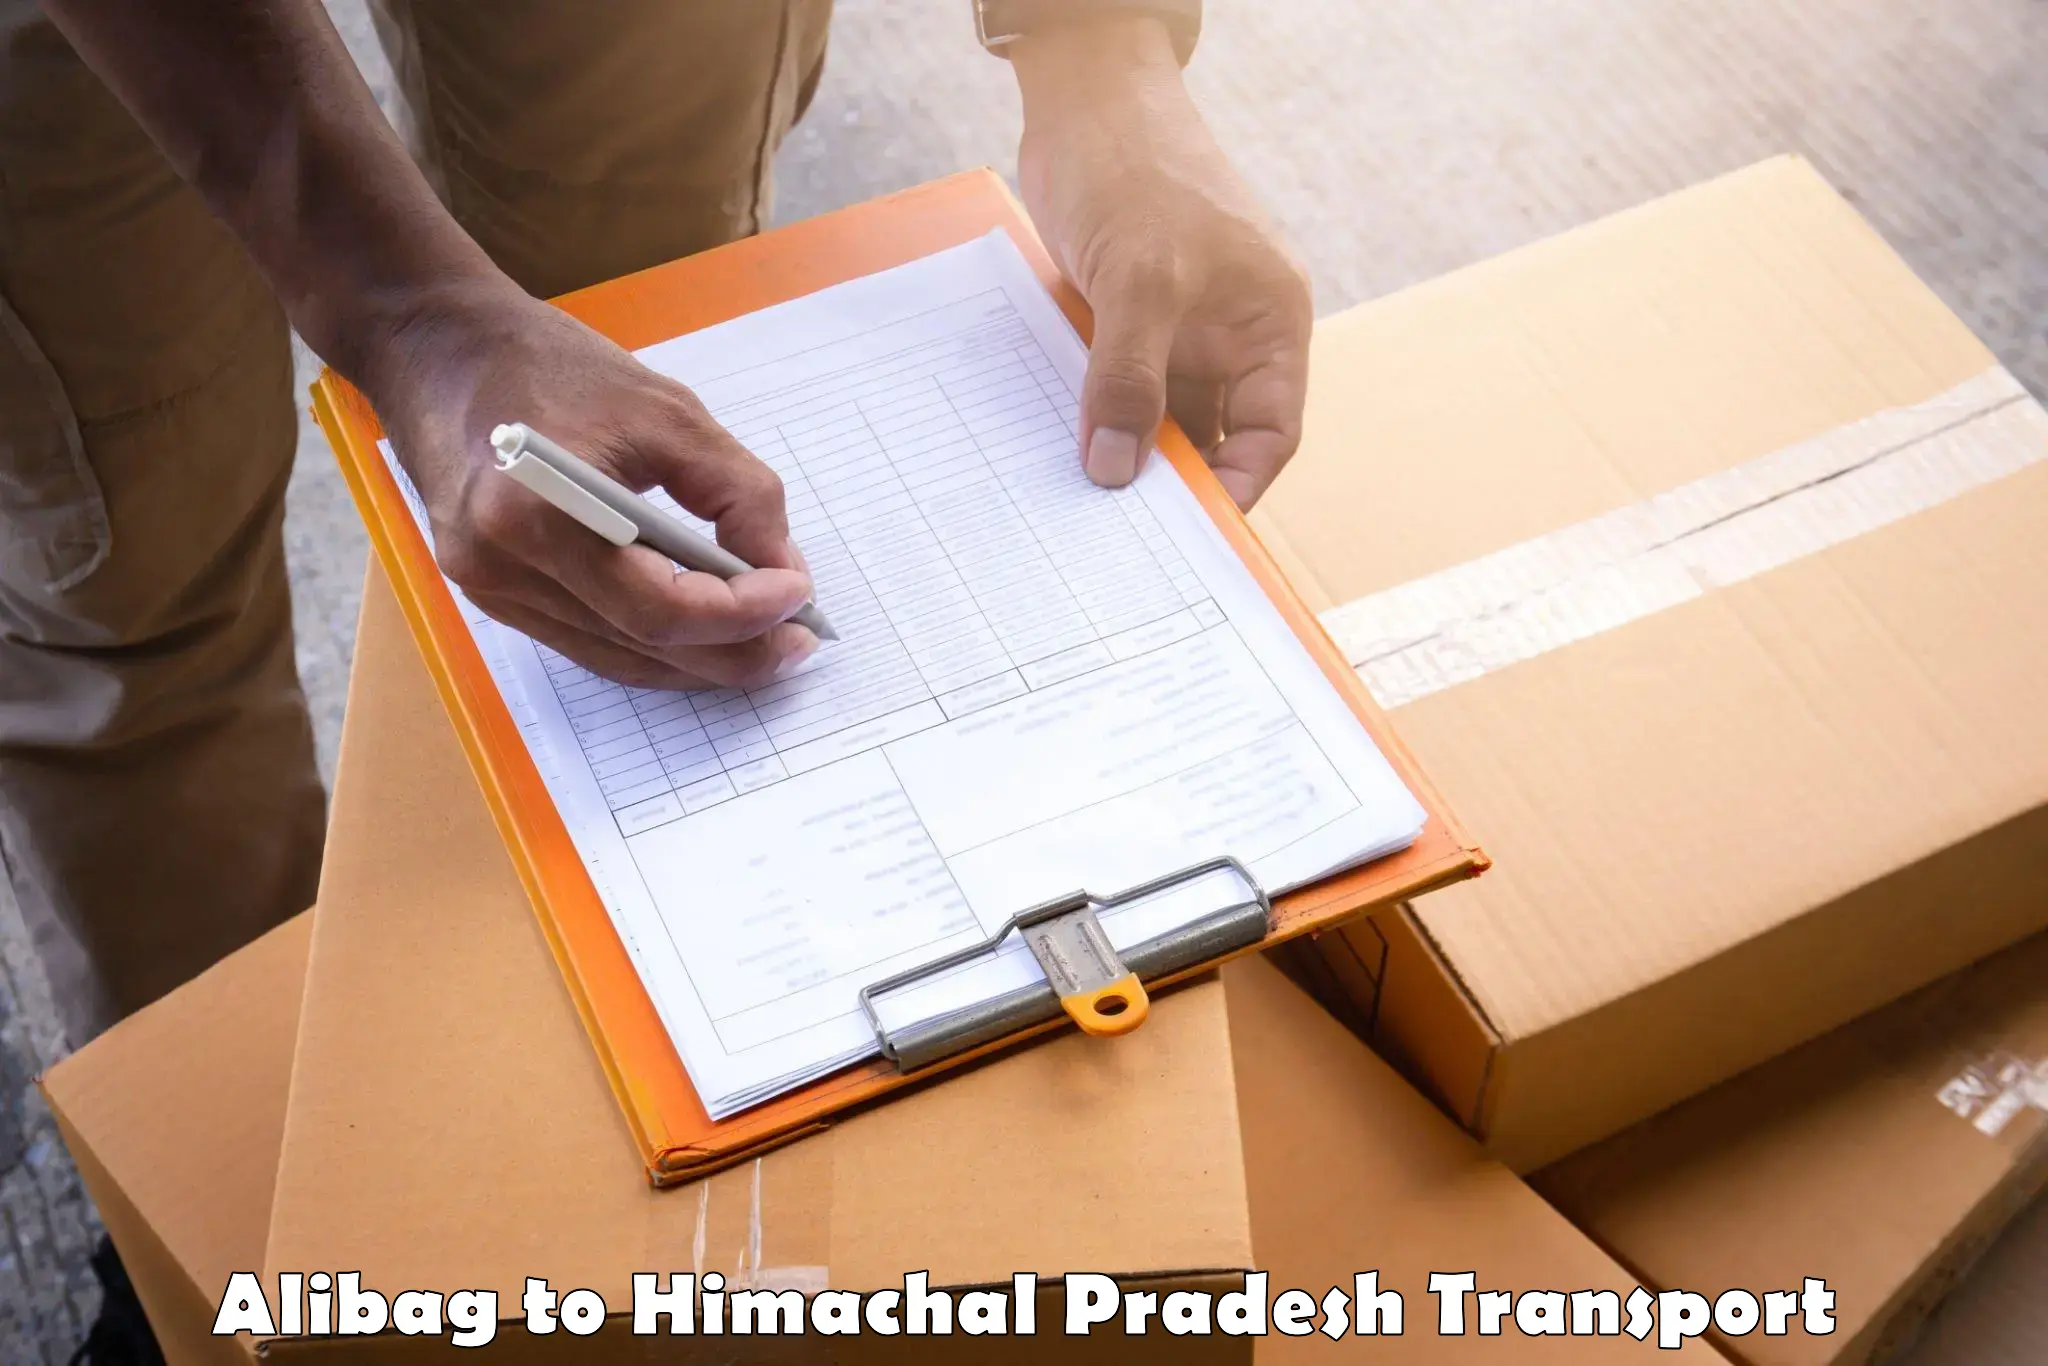 Two wheeler parcel service Alibag to Nalagarh